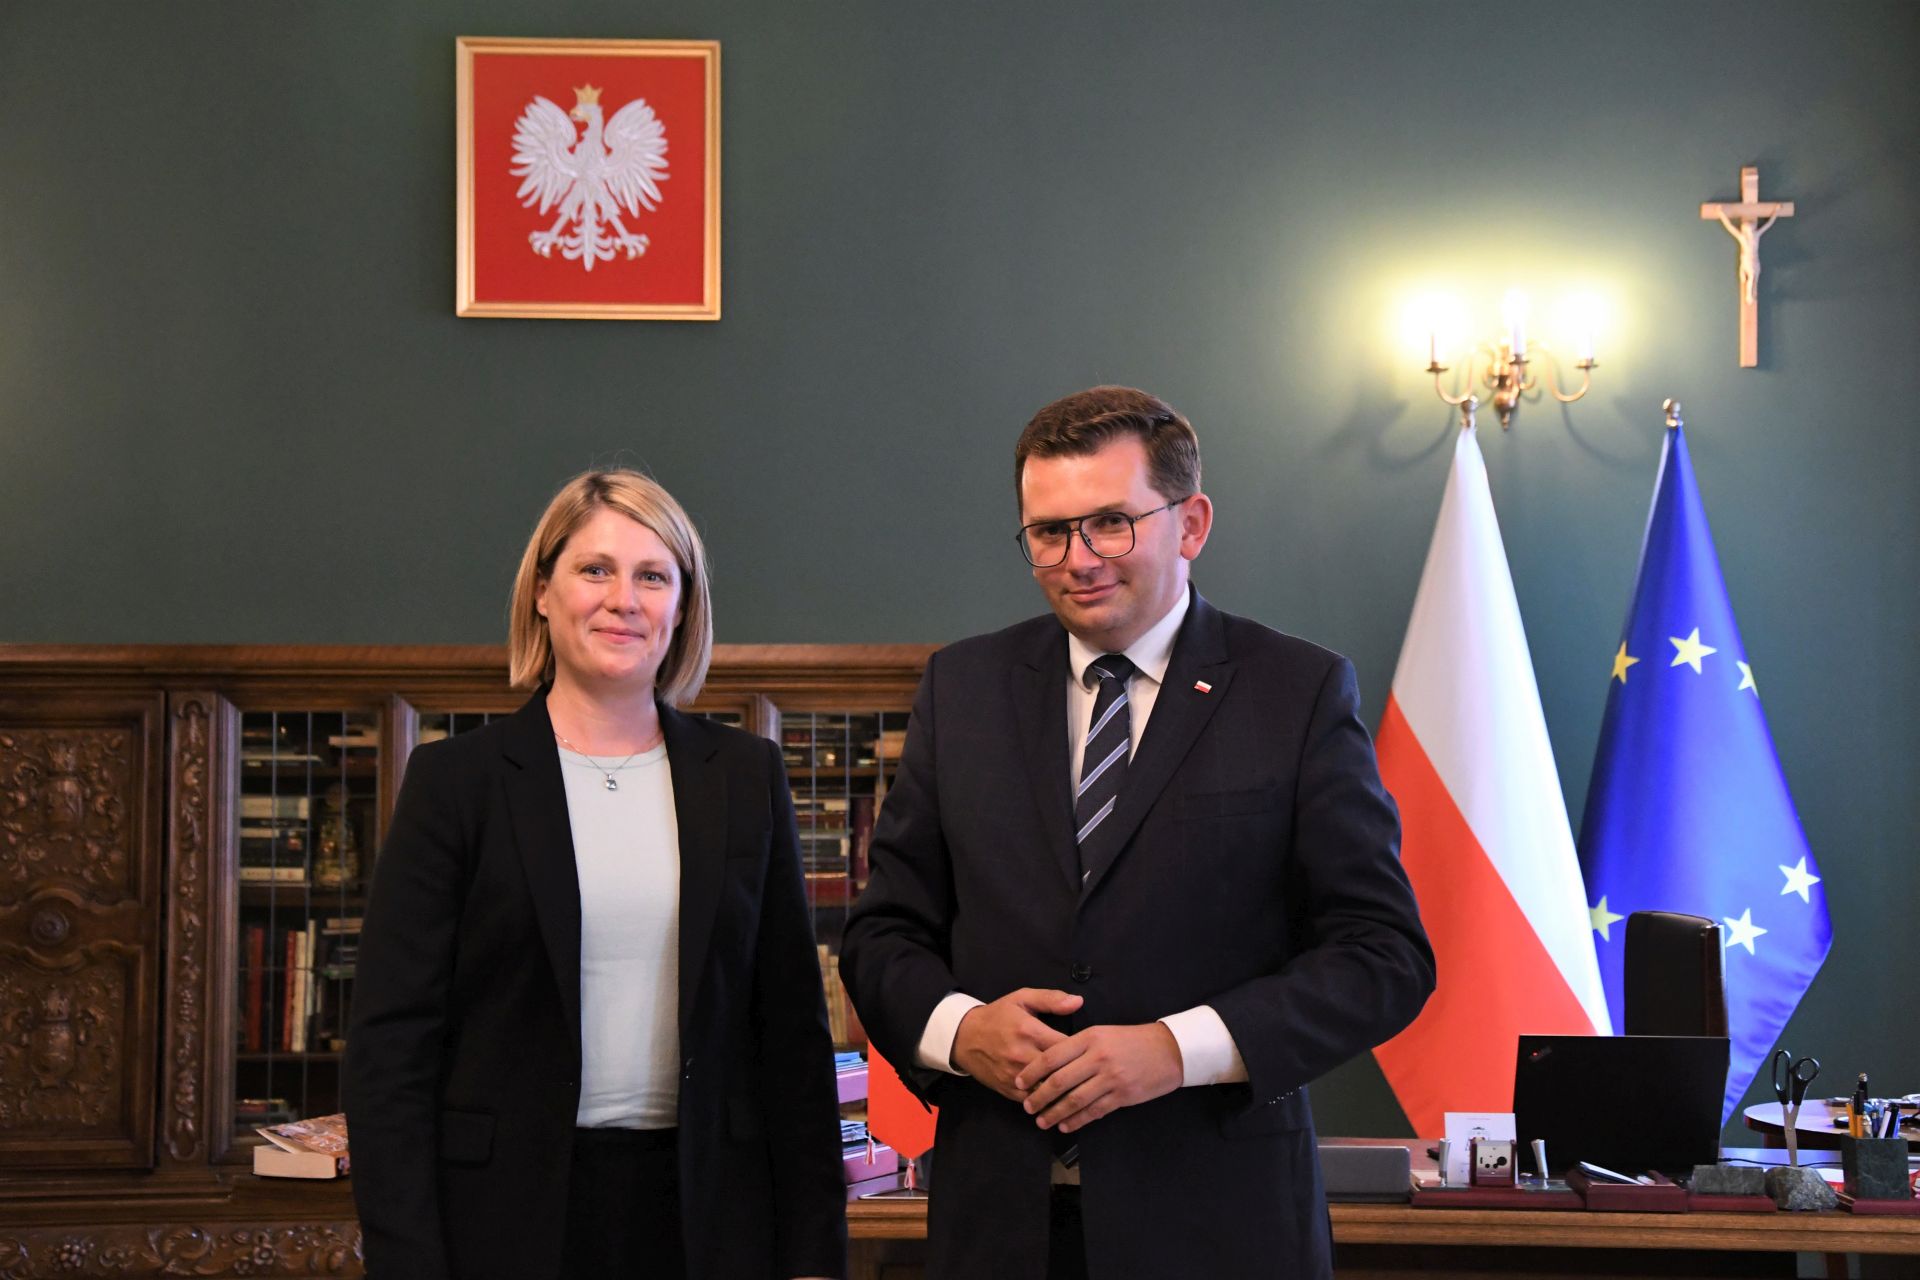 Konsul generalna USA w Krakowie Erin Nickerson z wizytą u wojewody małopolskiego Łukasza Kmity